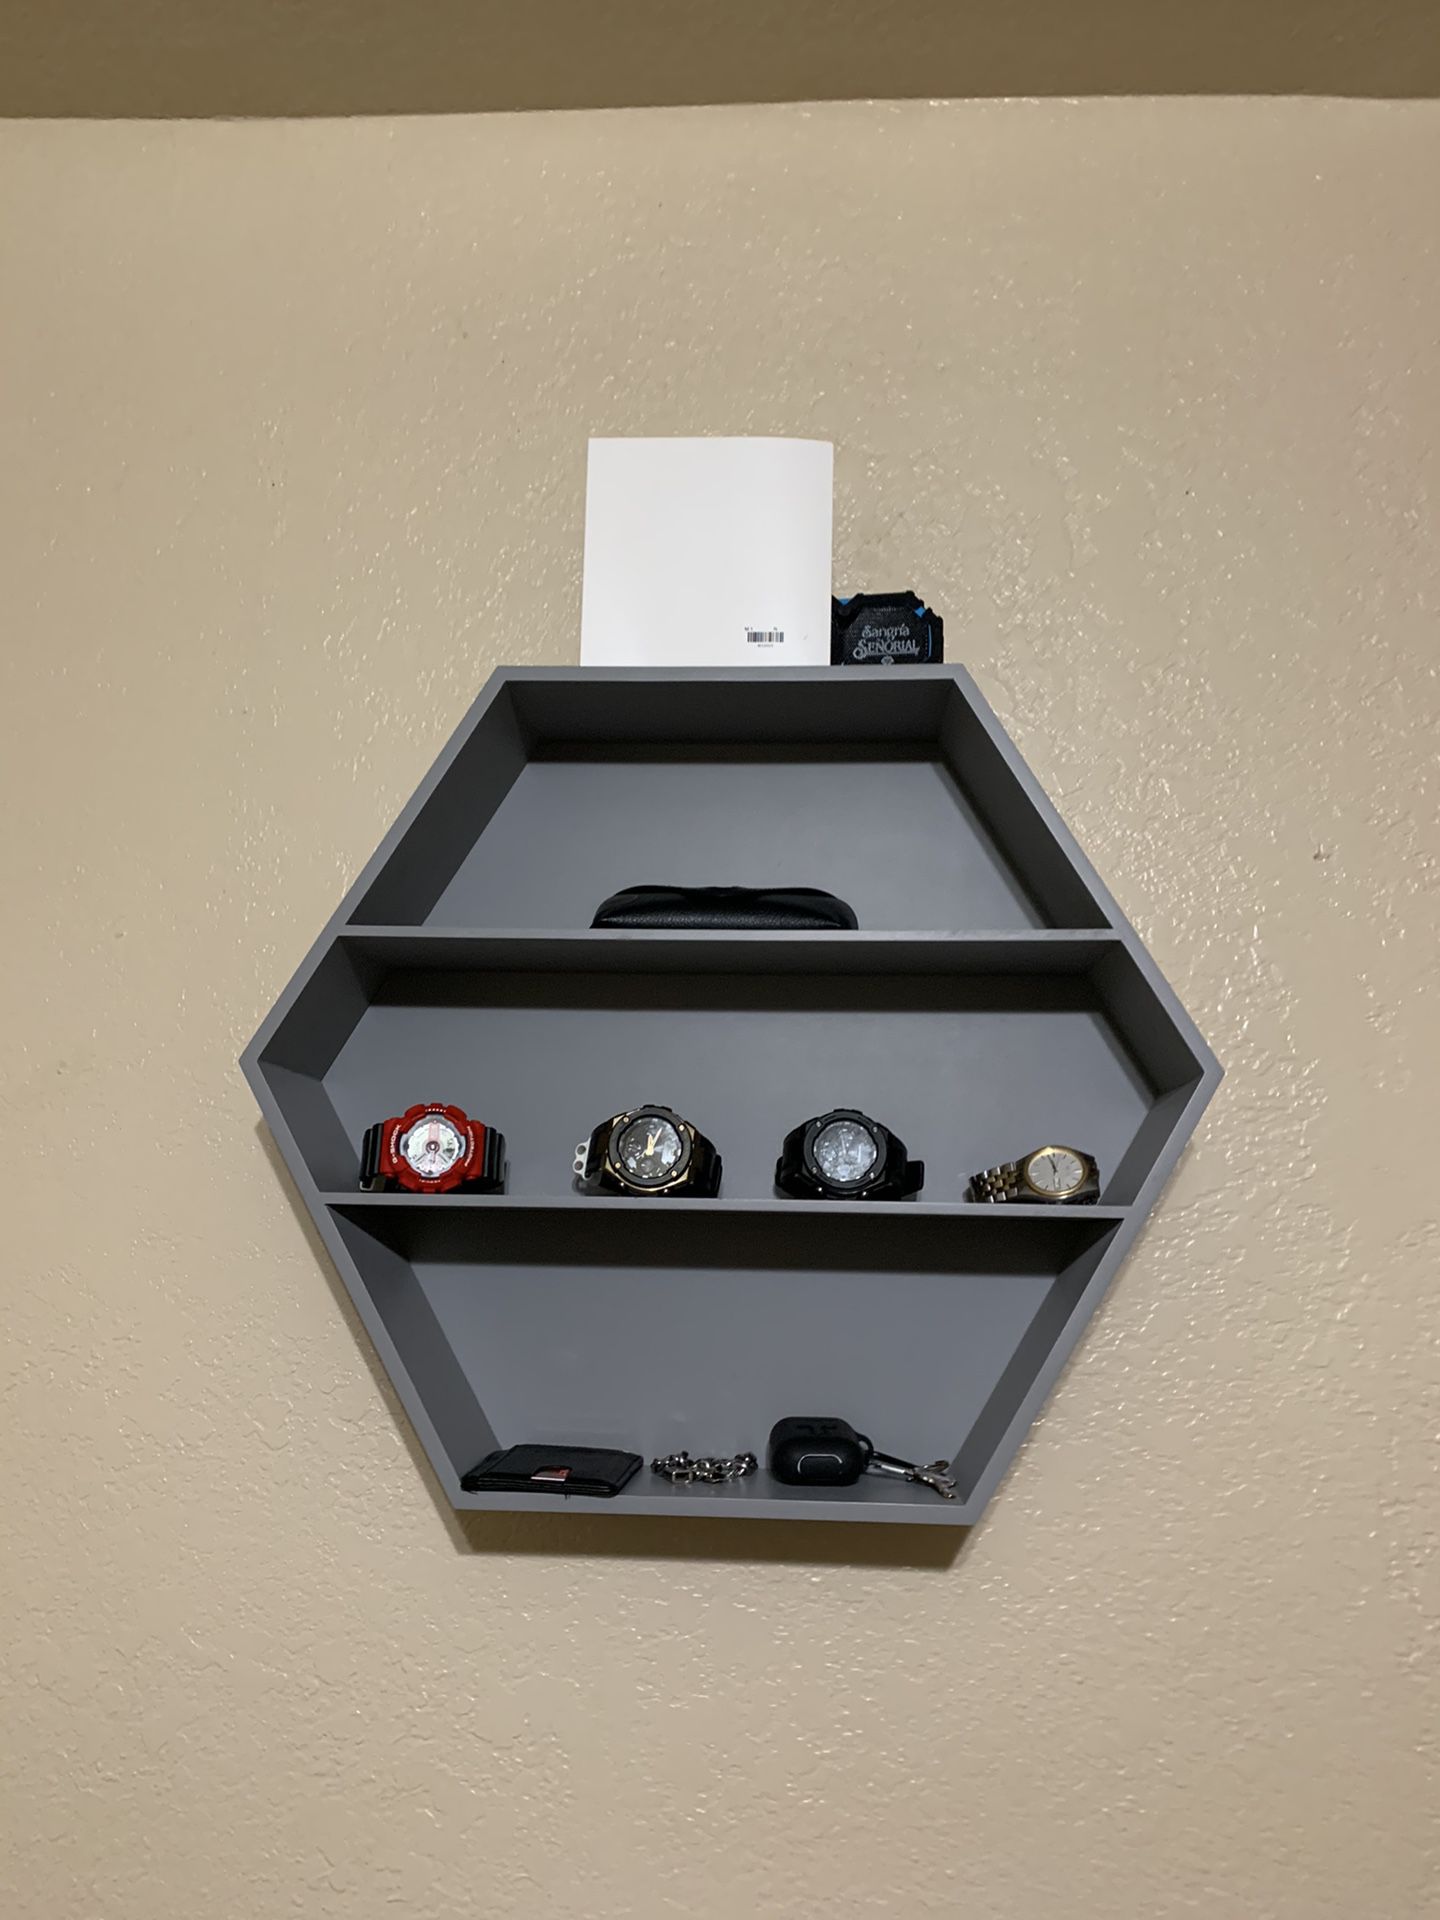 Shelf For ( Watch, Keys , Wallet , pictures , Hat shelf )